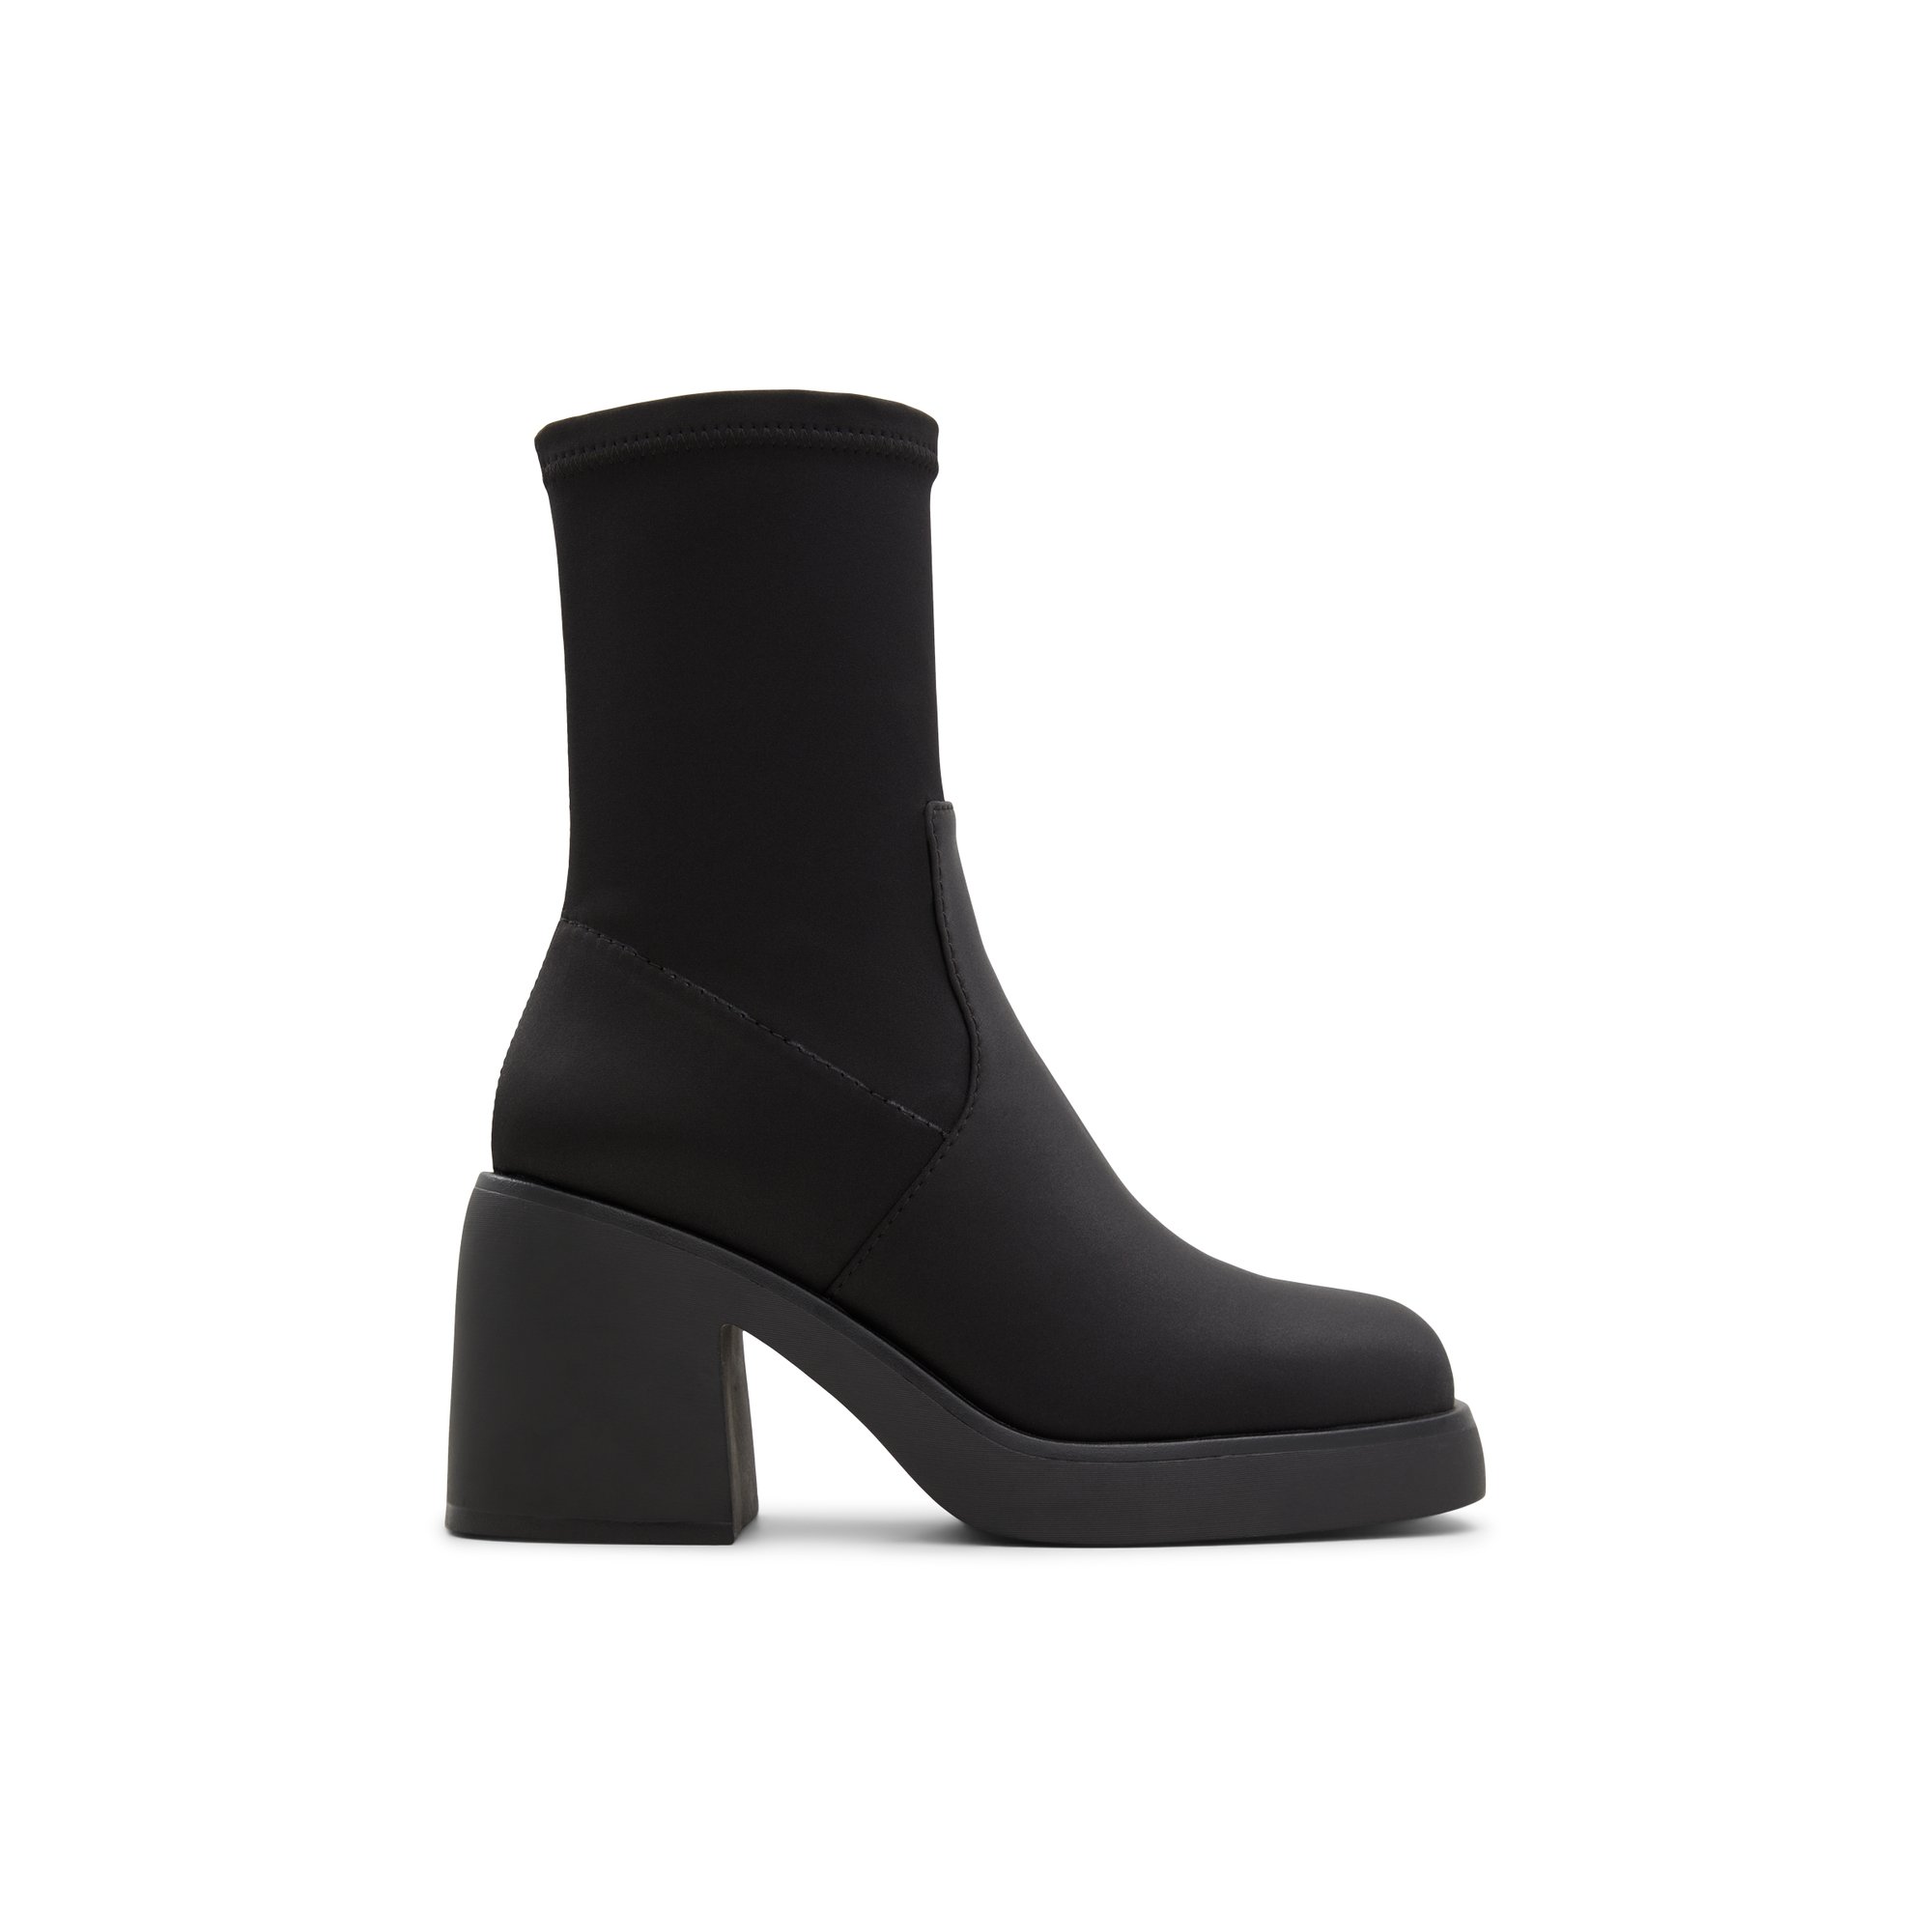 ALDO Persona - Women's Casual Boot - Black